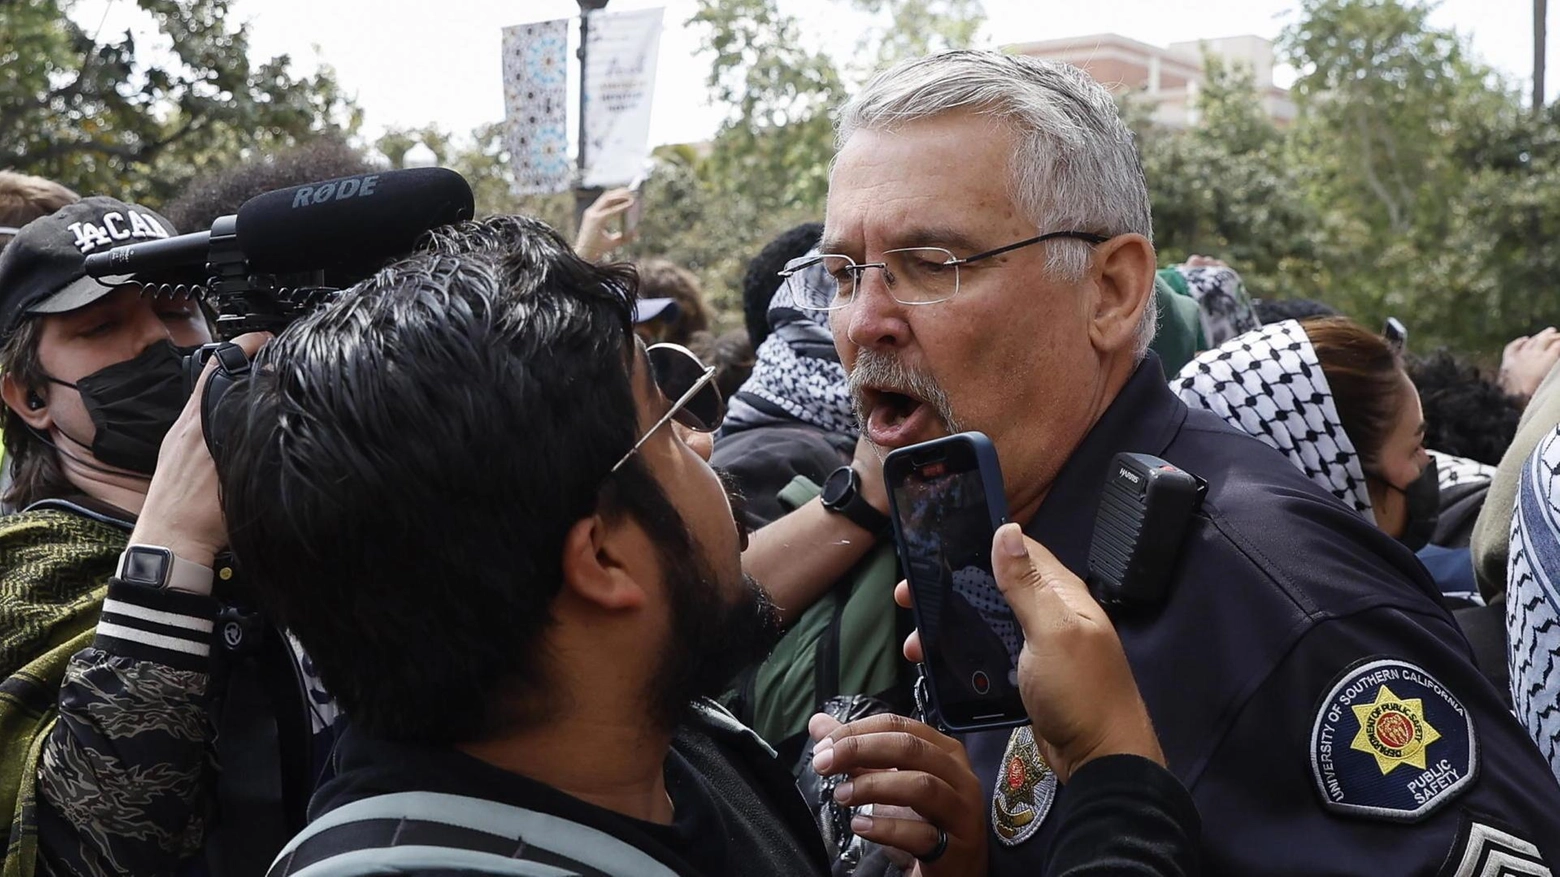 Gaza come il Vietnam, l’America ribolle: 400 arresti nei campus. Occupata SciencesPo